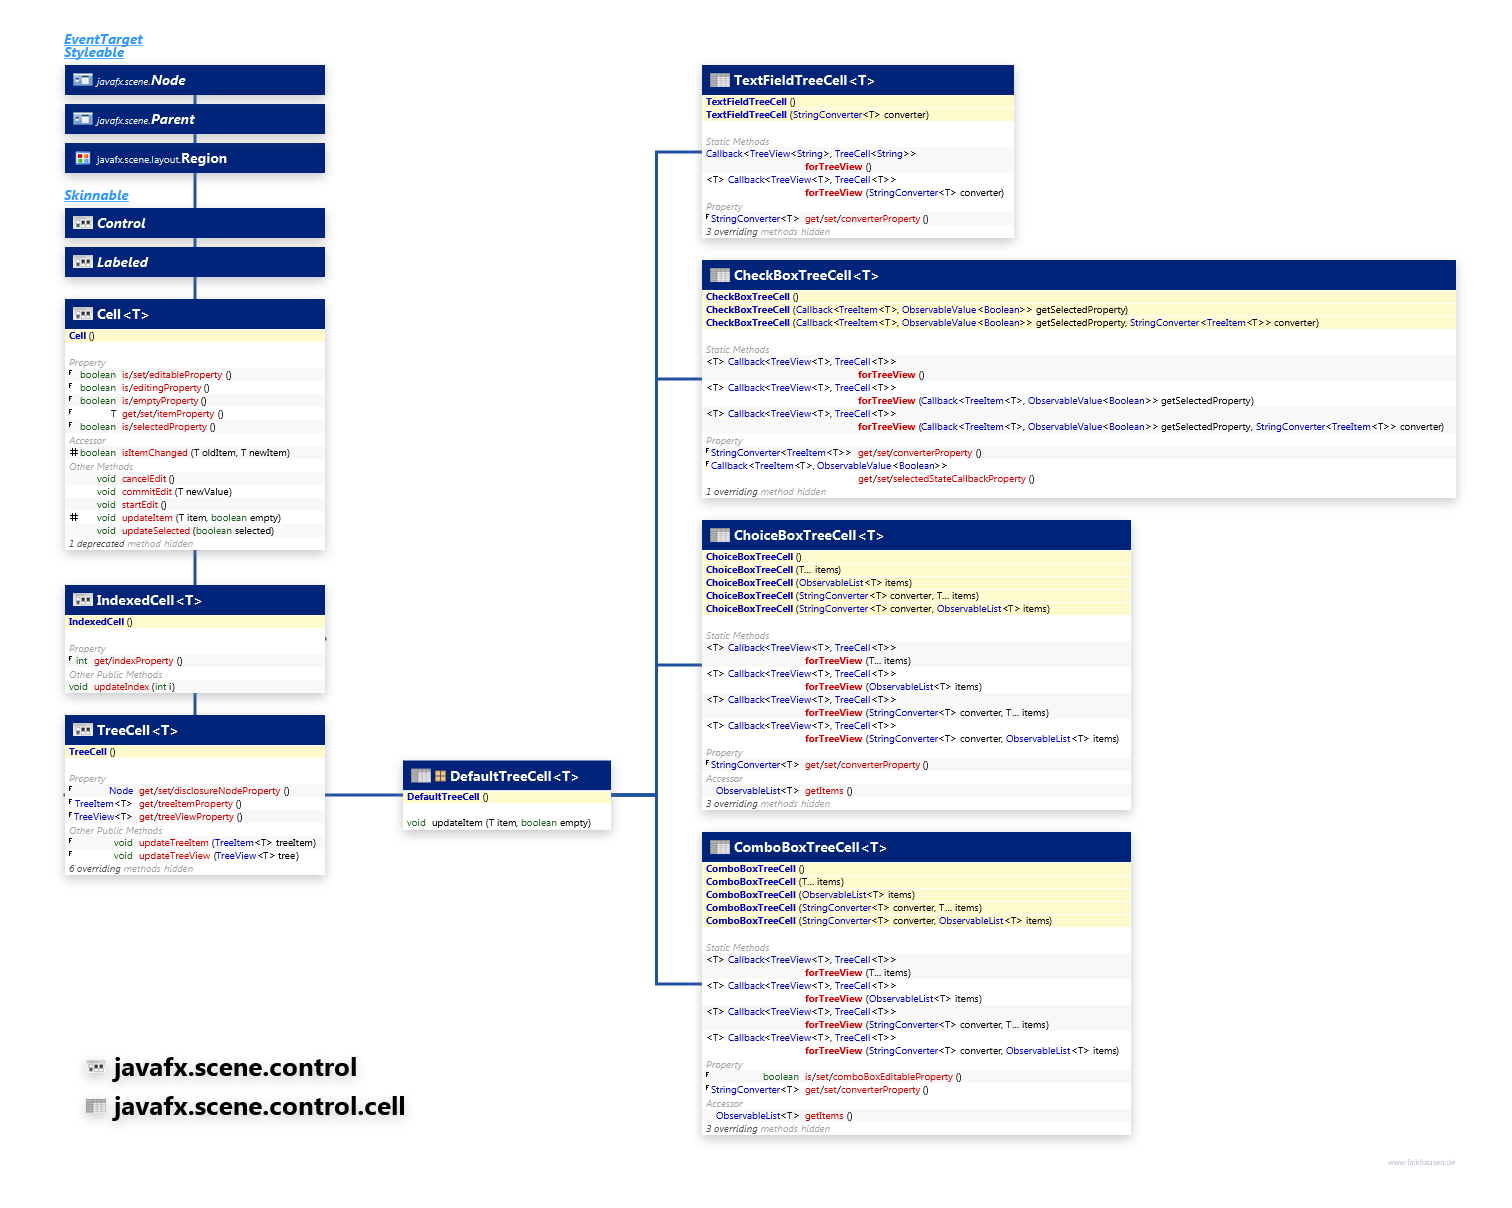 javafx.scene.control.cell javafx.scene.control TreeCell class diagram and api documentation for JavaFX 8